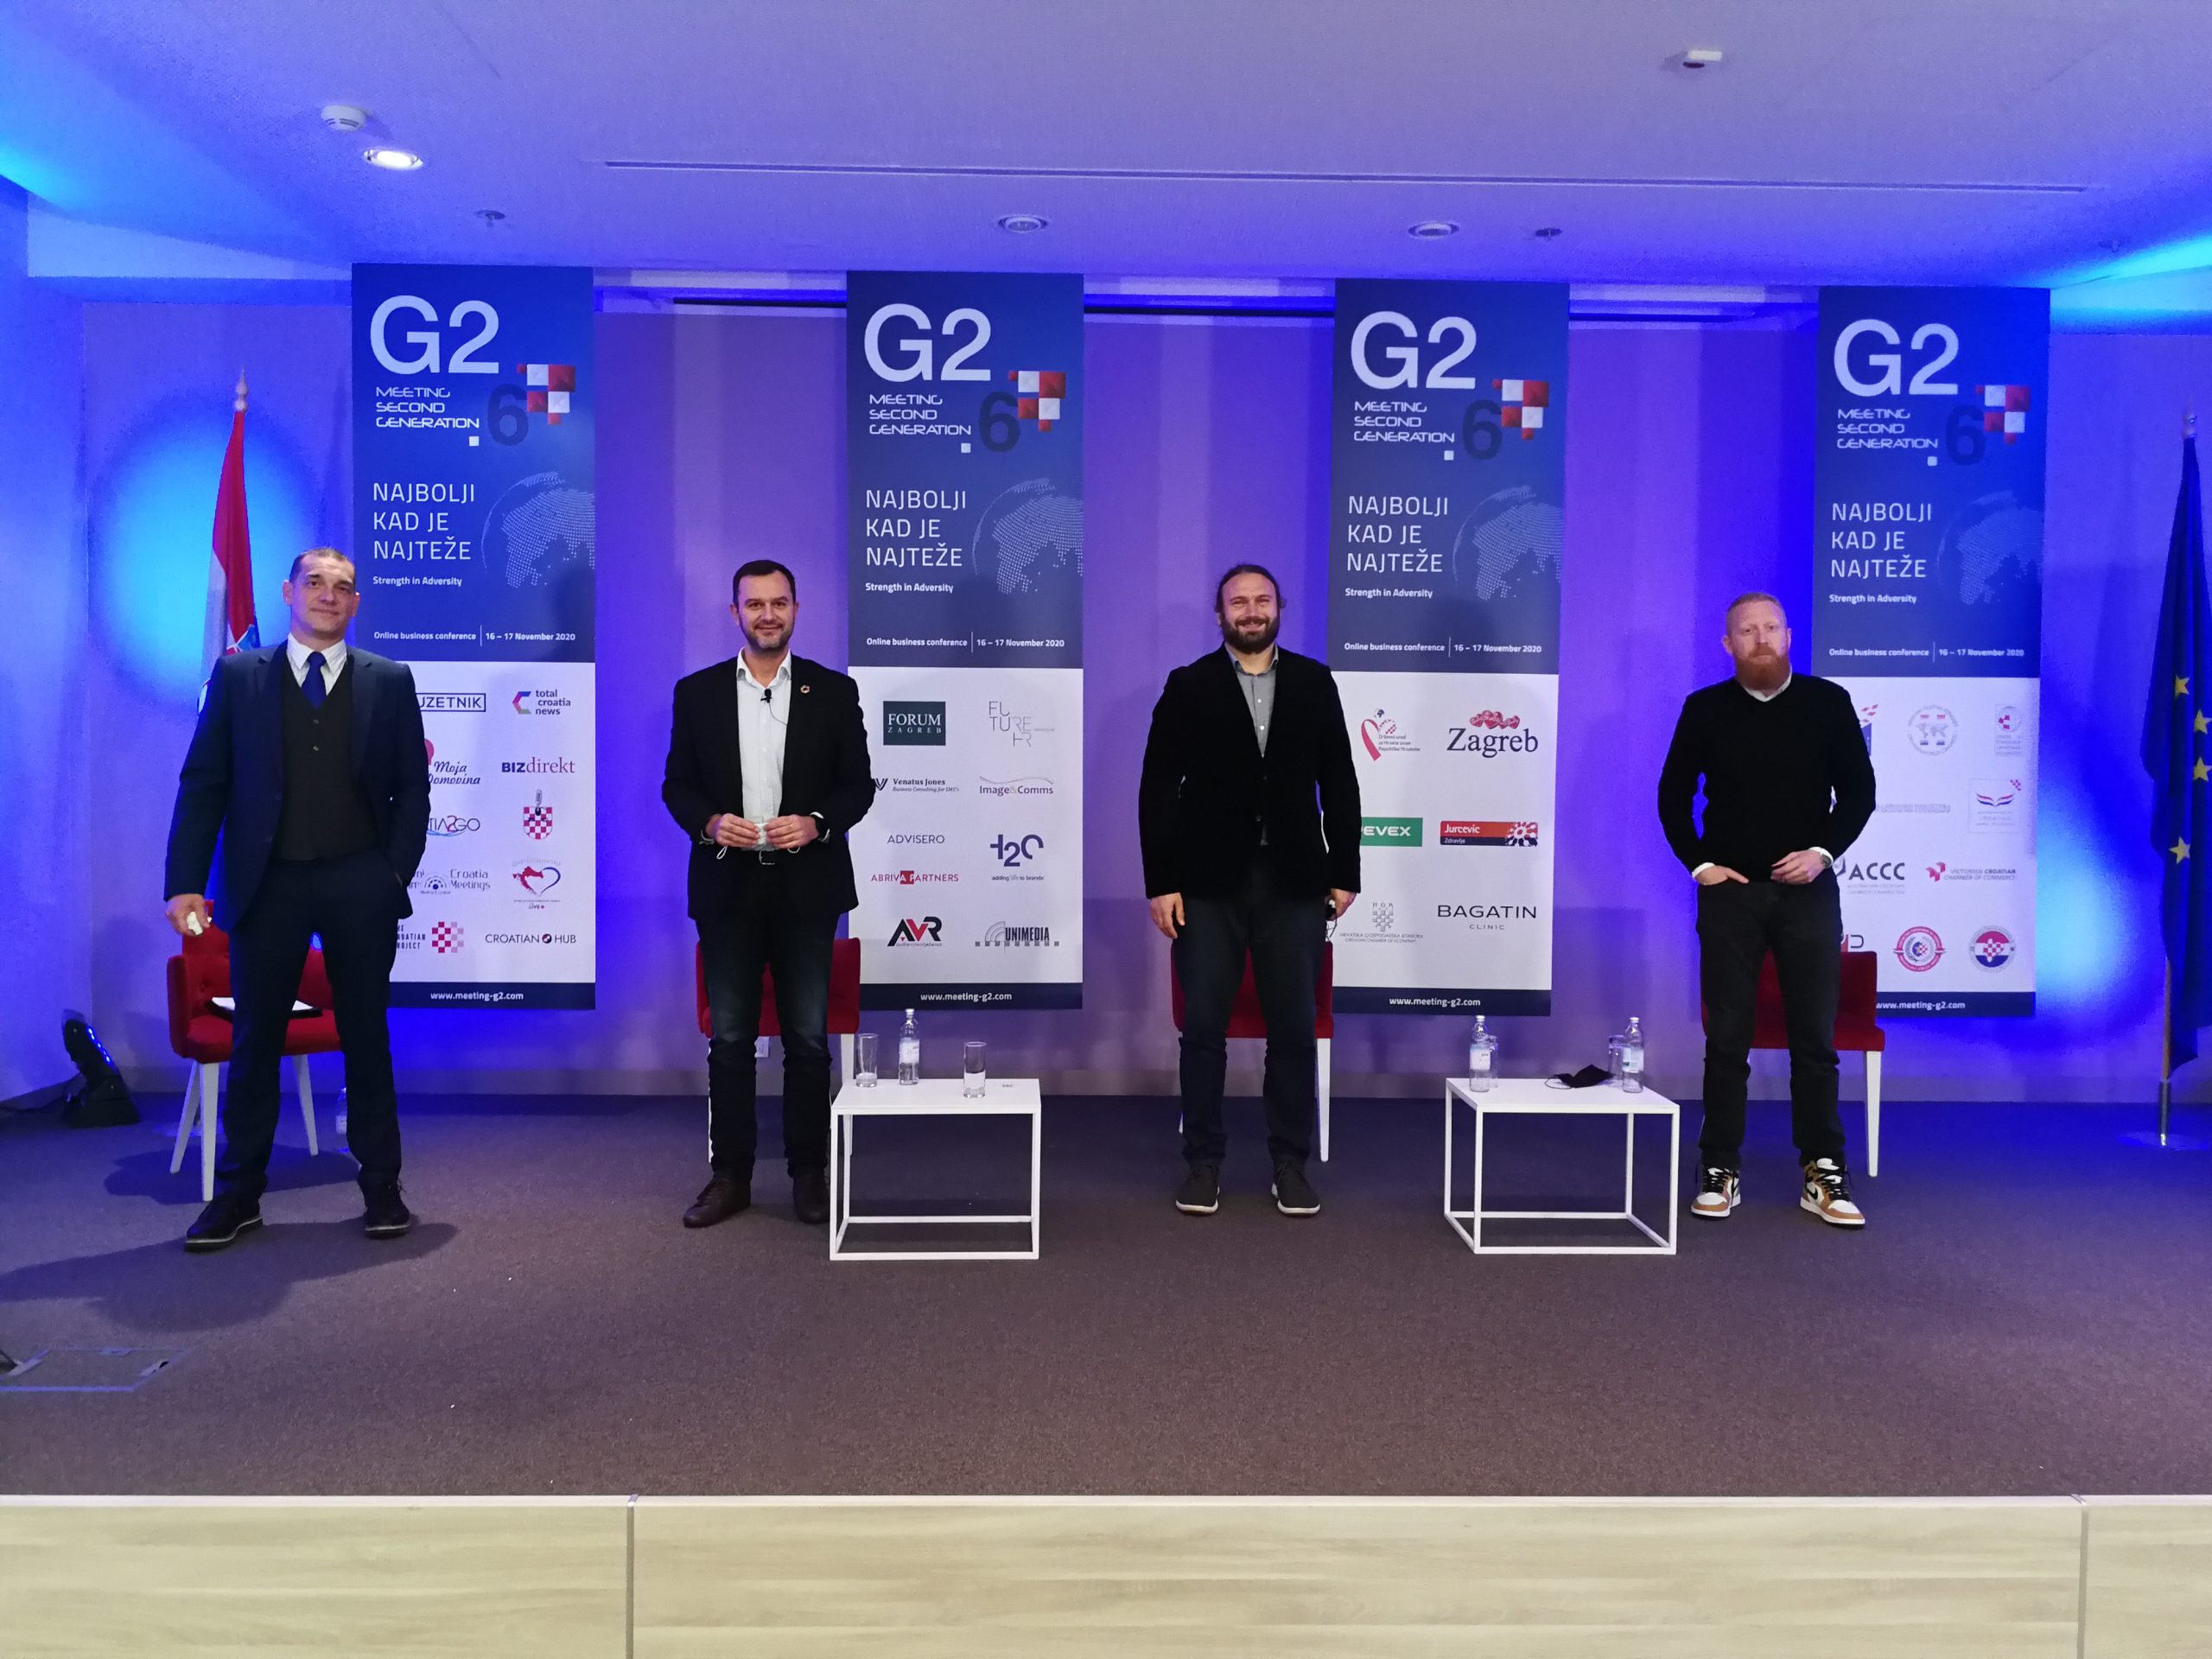 Konferencija Meeting G2.6 okupila gospodarstvenike iz 17 zemalja svijeta